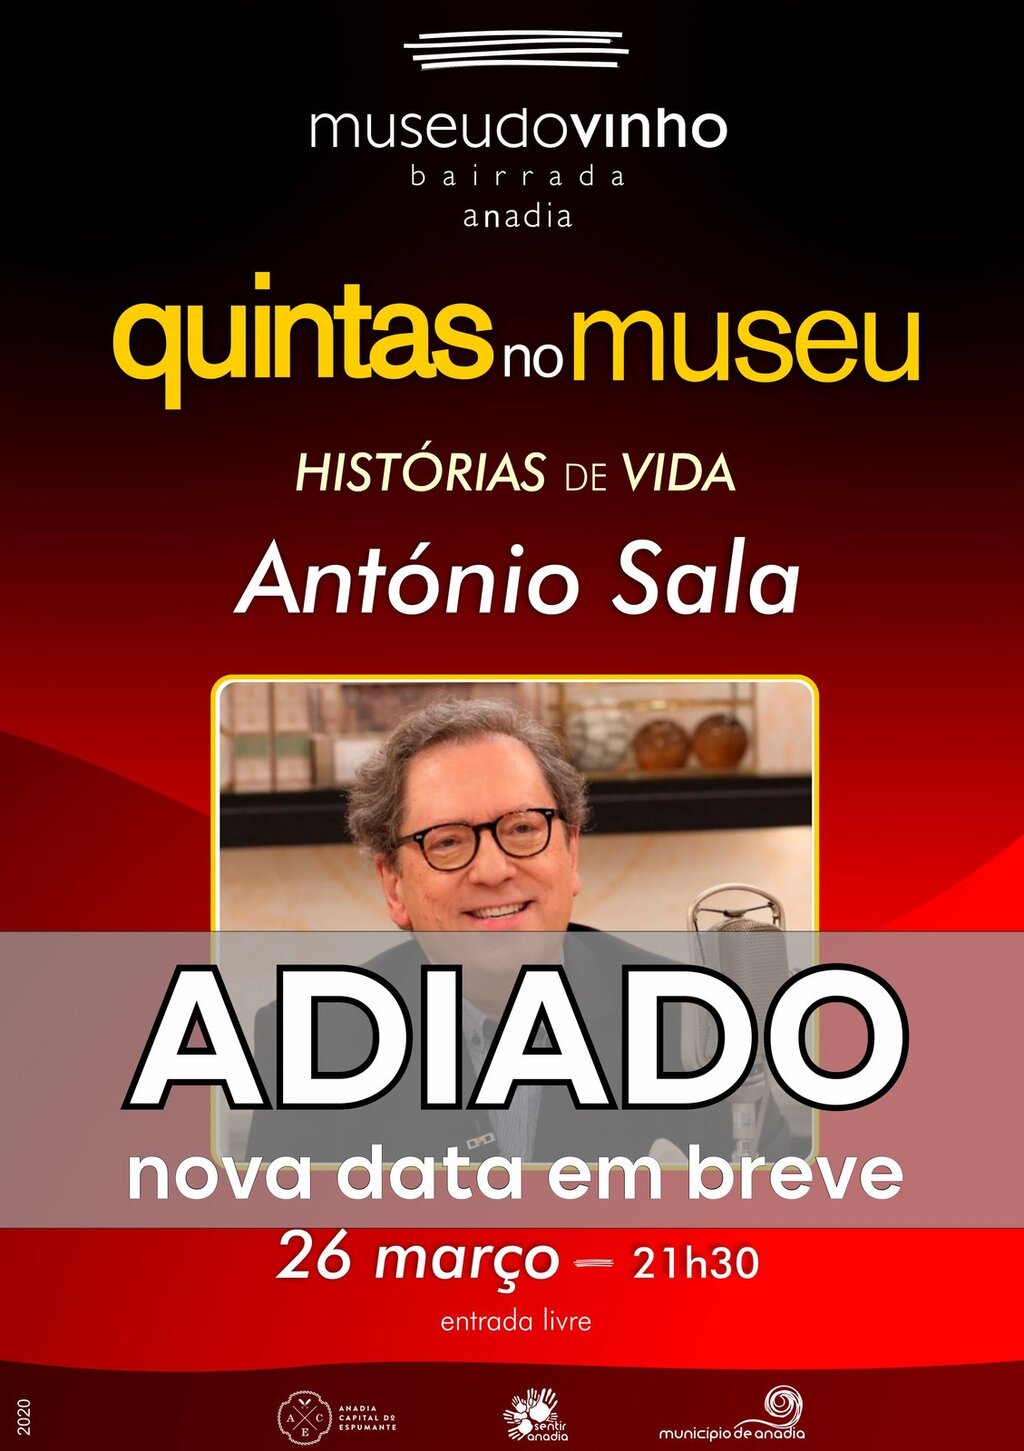 Quintas no Museu - "Histórias de Vida" António Sala - ADIADO